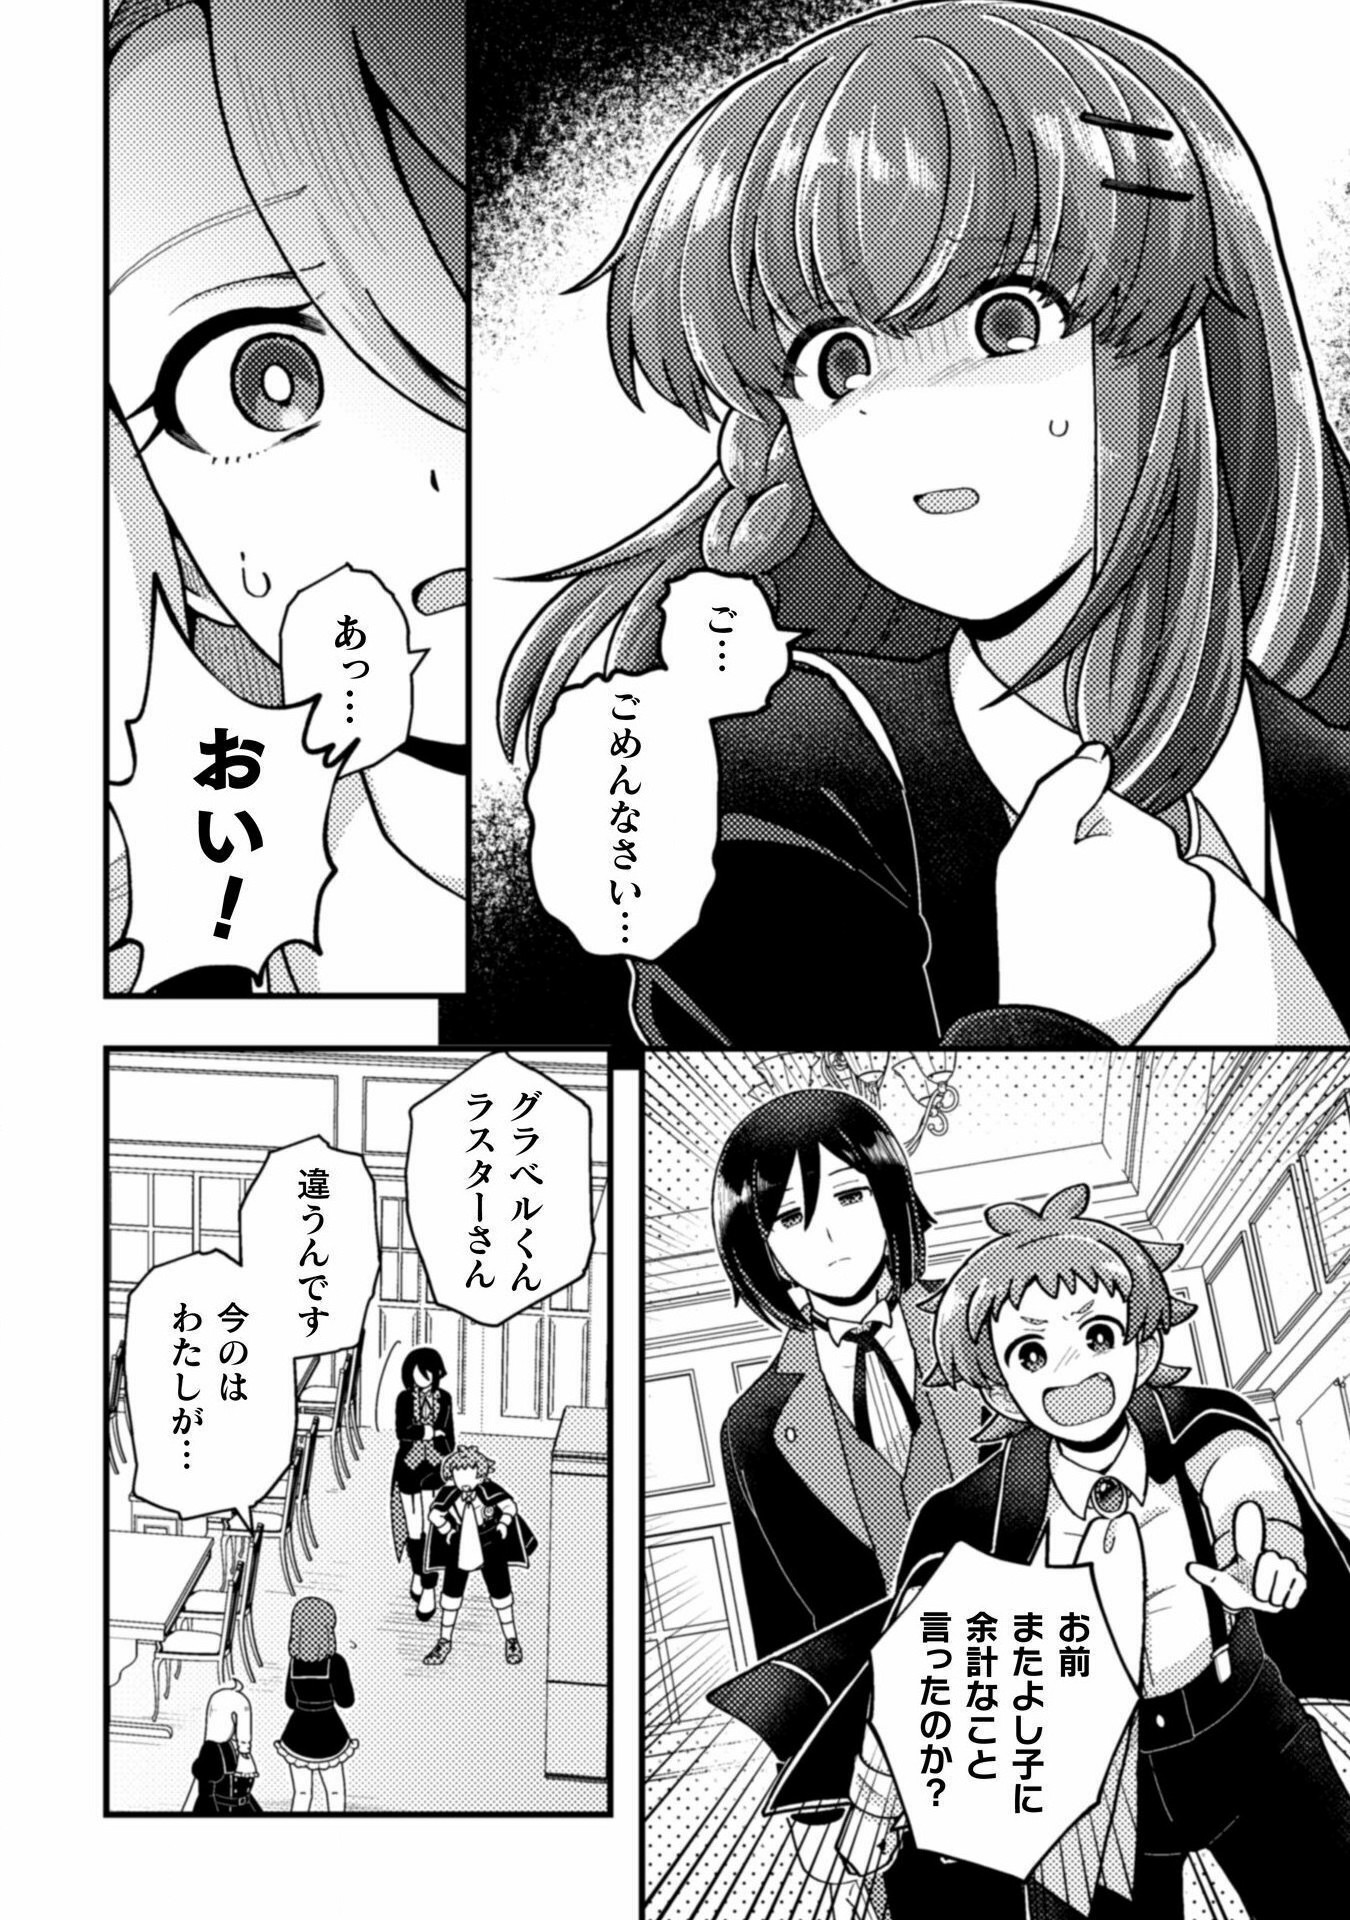 Otome Game no Akuyaku Reijou ni Tensei shitakedo Follower ga Fukyoushiteta Chisiki shikanai - Chapter 21 - Page 6